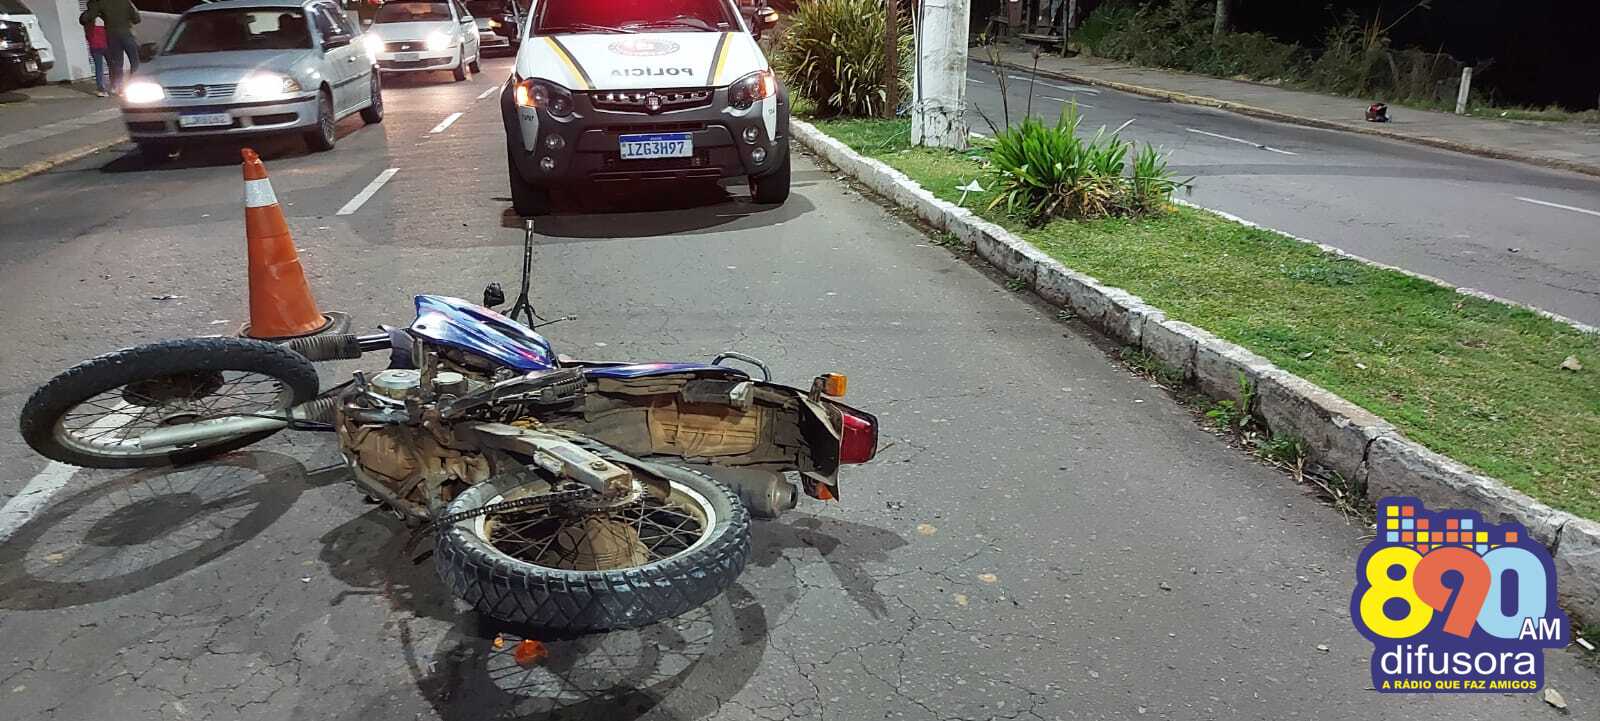 Identificado motociclista morto em acidente no bairro São Roque, em Bento